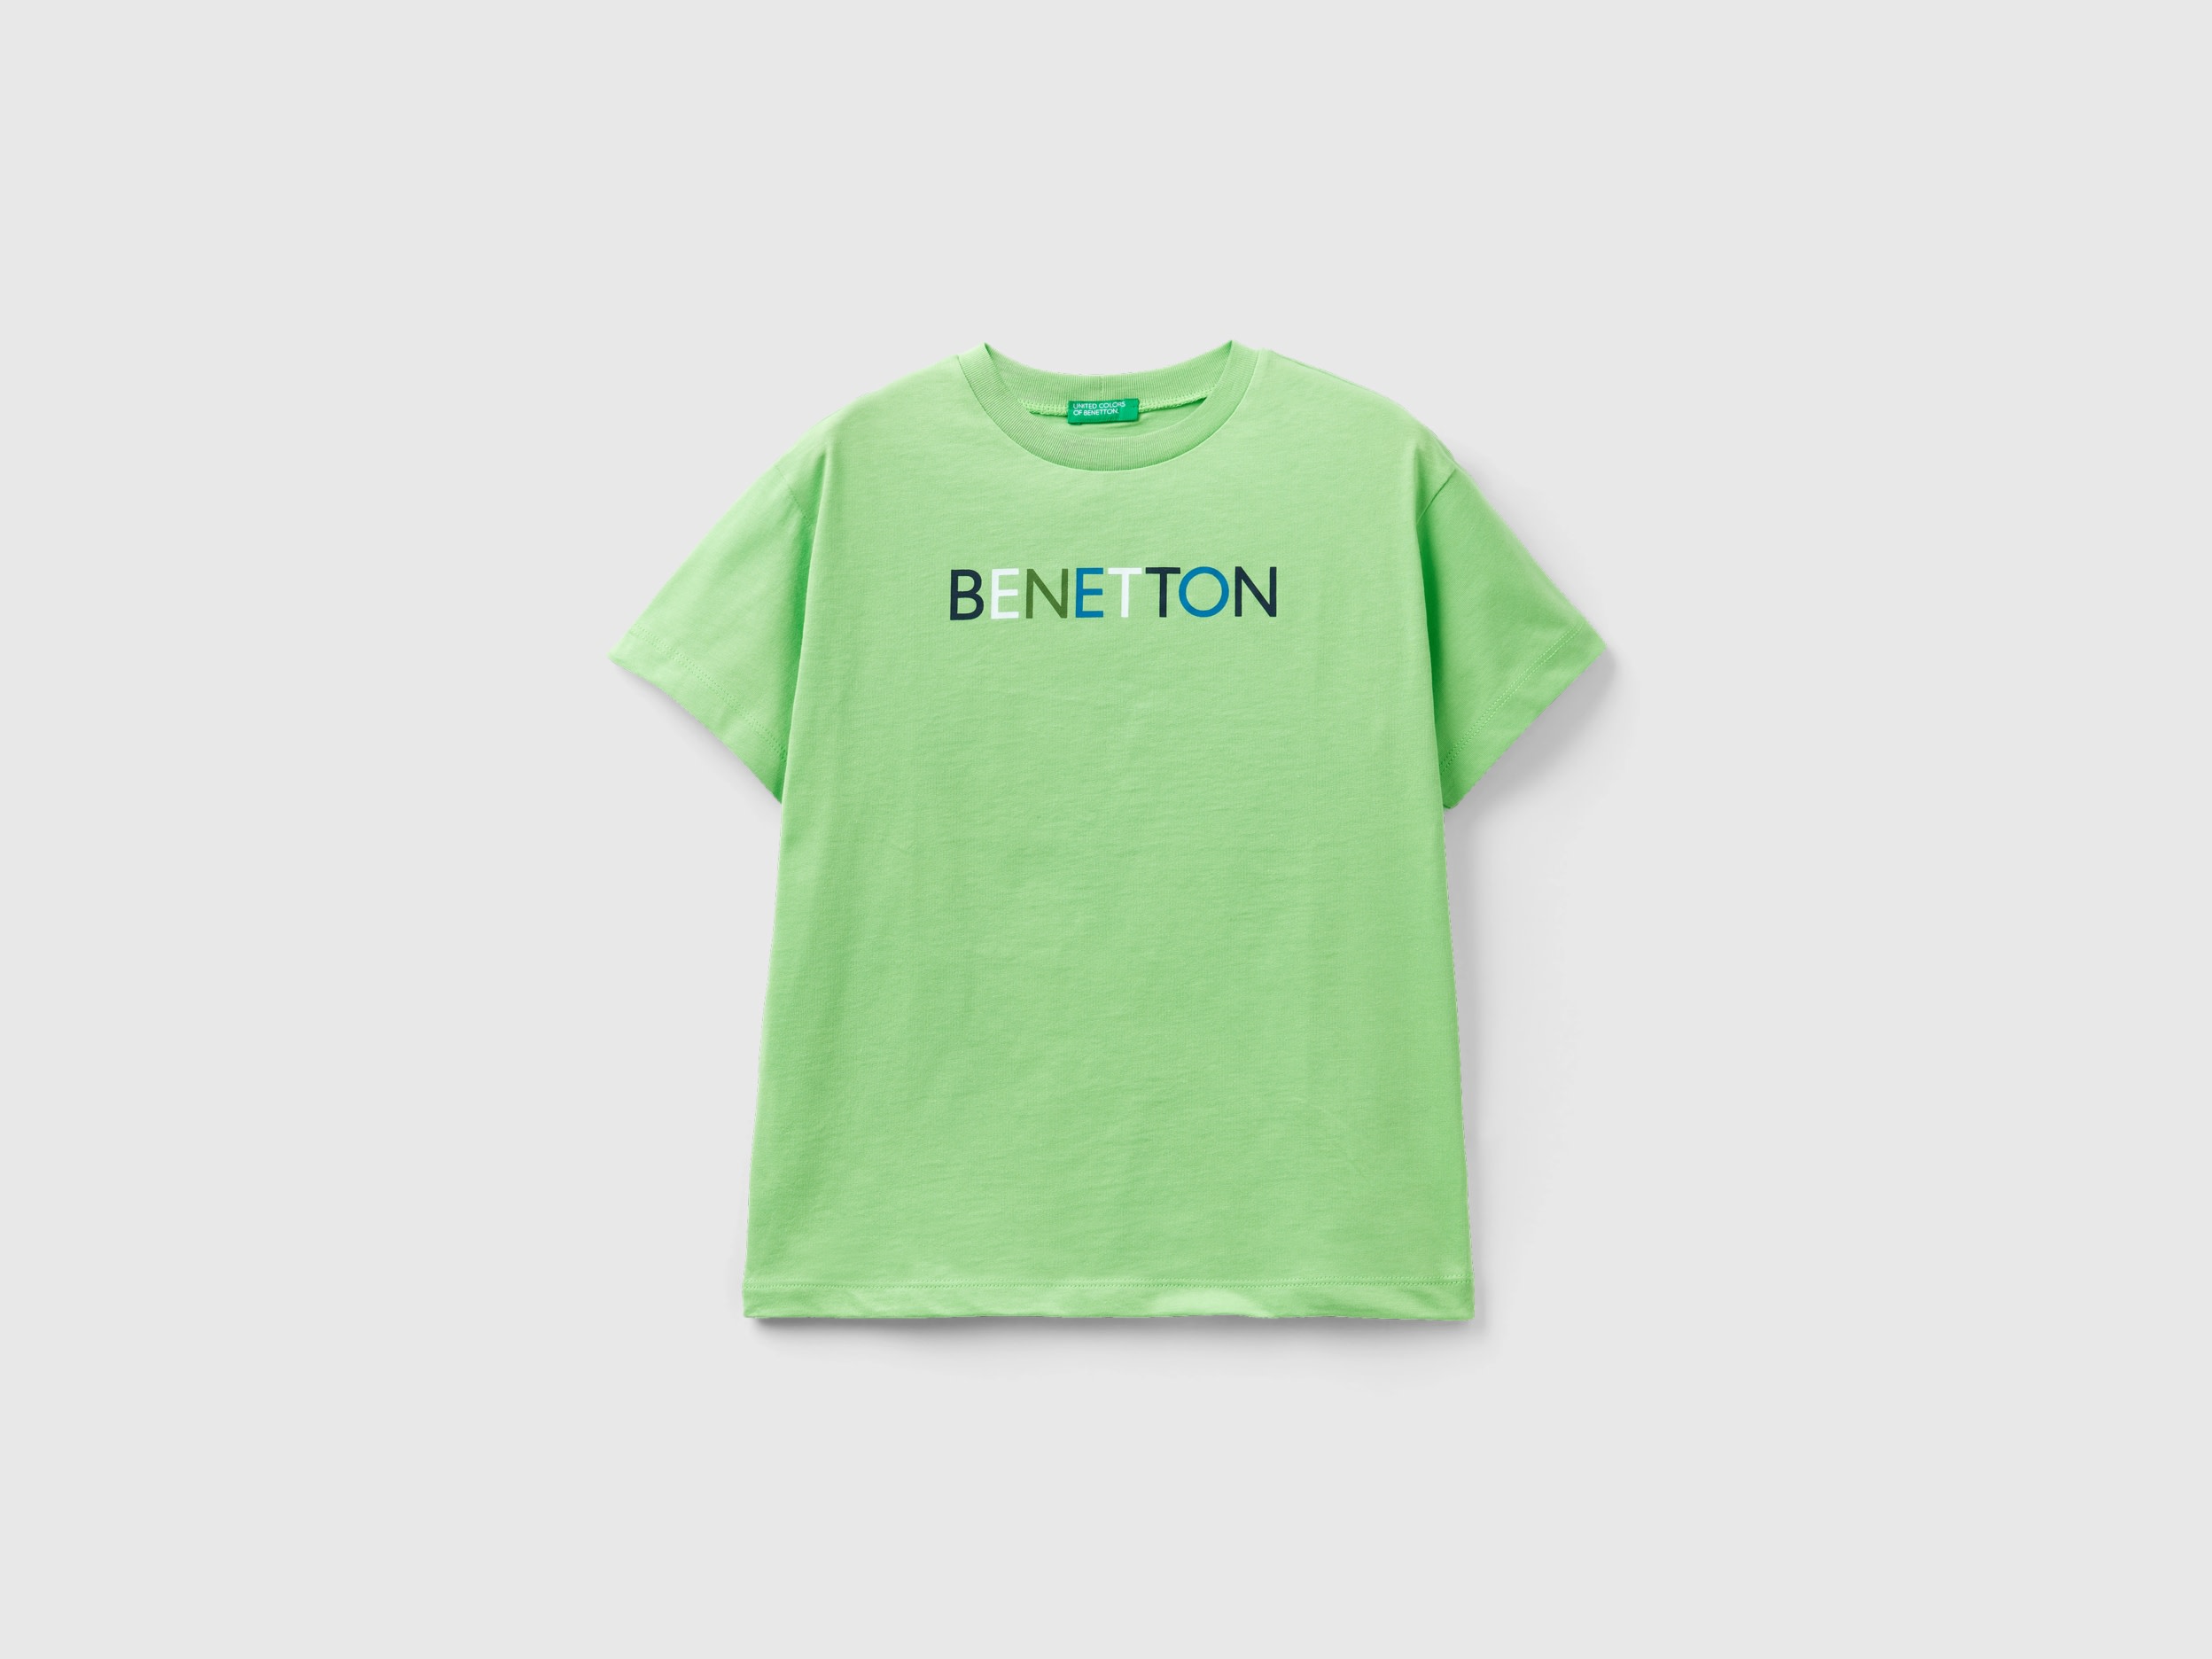 Benetton, 100% Organic Cotton T-shirt, size XL, Light Green, Kids